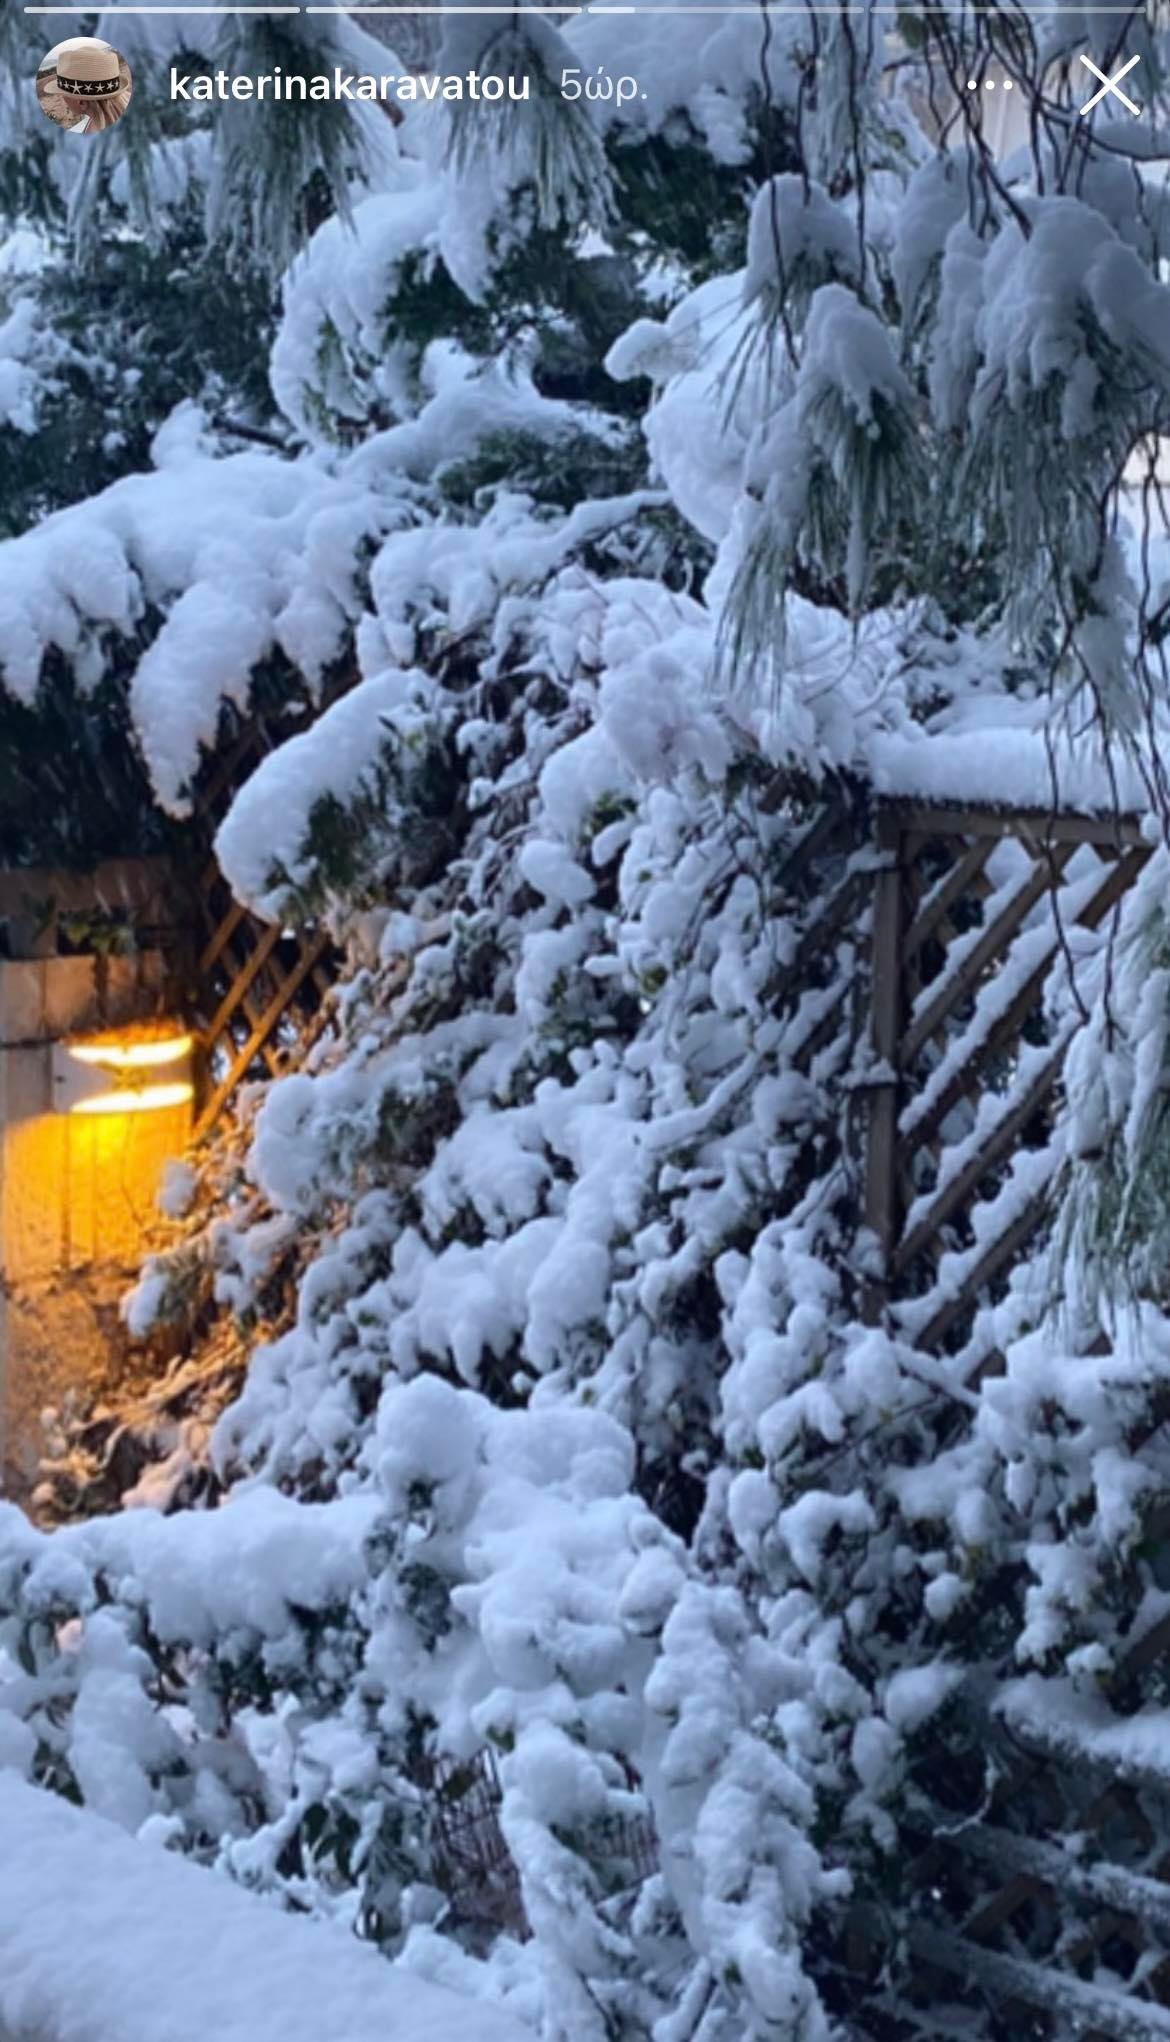 Κατερίνα Καραβάτου: Μας δείχνει τη χιονισμένη αυλή του σπιτιού της- Τα φυτά και η μεγάλη κούνια εντυπωσιάζουν